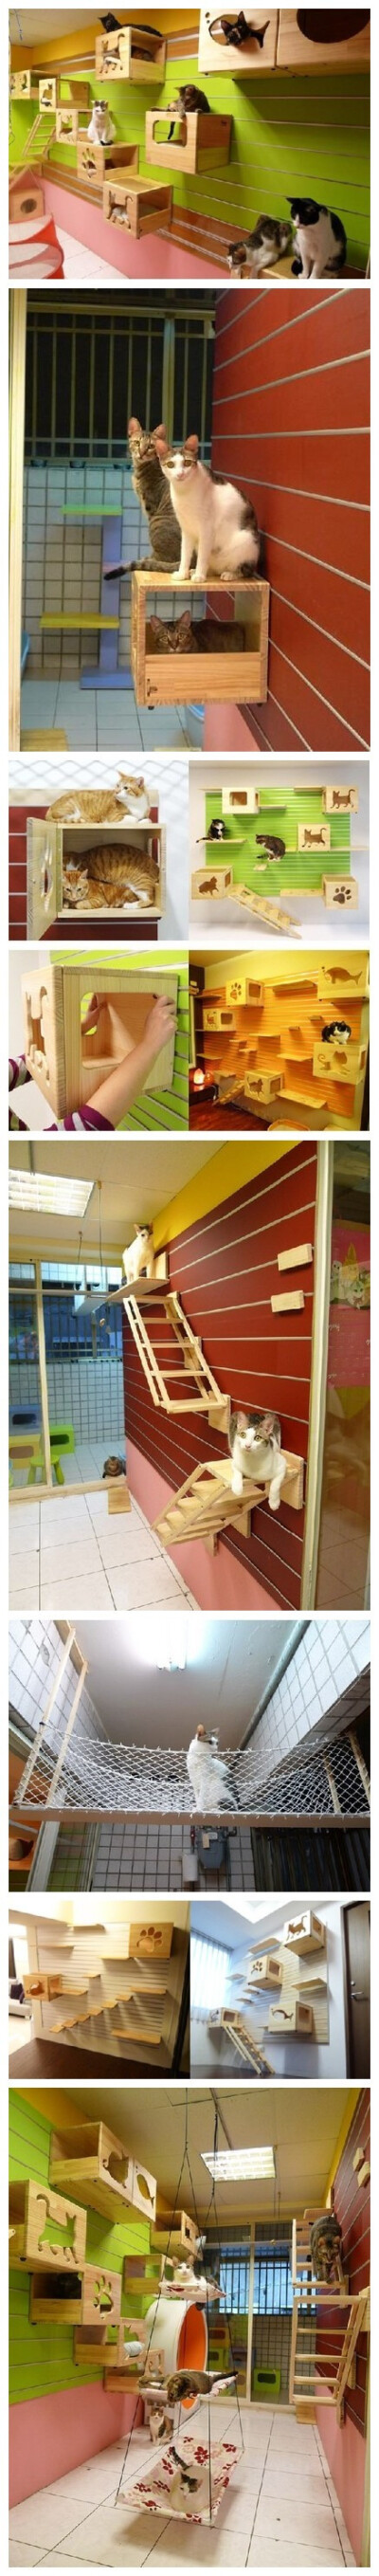 创意宠物家具 喵星人的专属游戏墙 有日本设计师为 狗狗们设计专属家具 ，喵星人完全不以为然，因为它们早就有自己的家具开发公司了——CatsWall，它是一家专门开发让猫咪在墙壁上玩耍的家具公司哟。 这些箱子既能让…